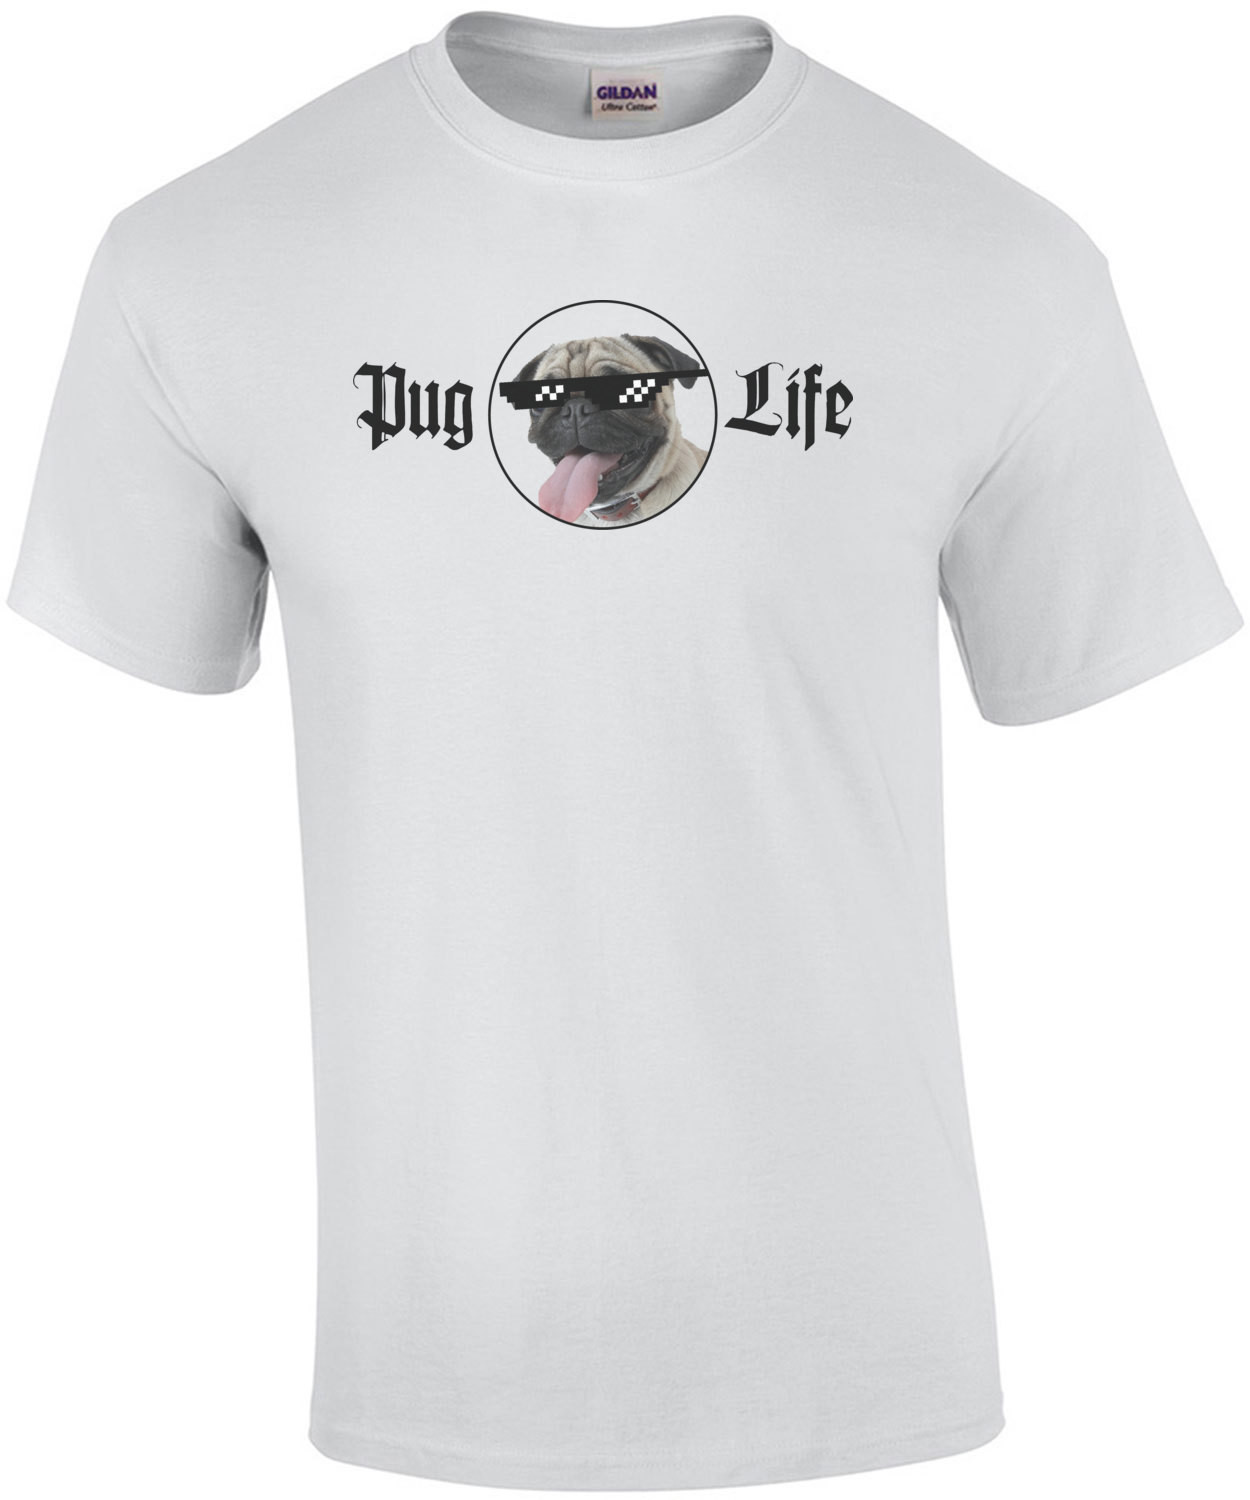 Pug Life - Funny Pug T-Shirt